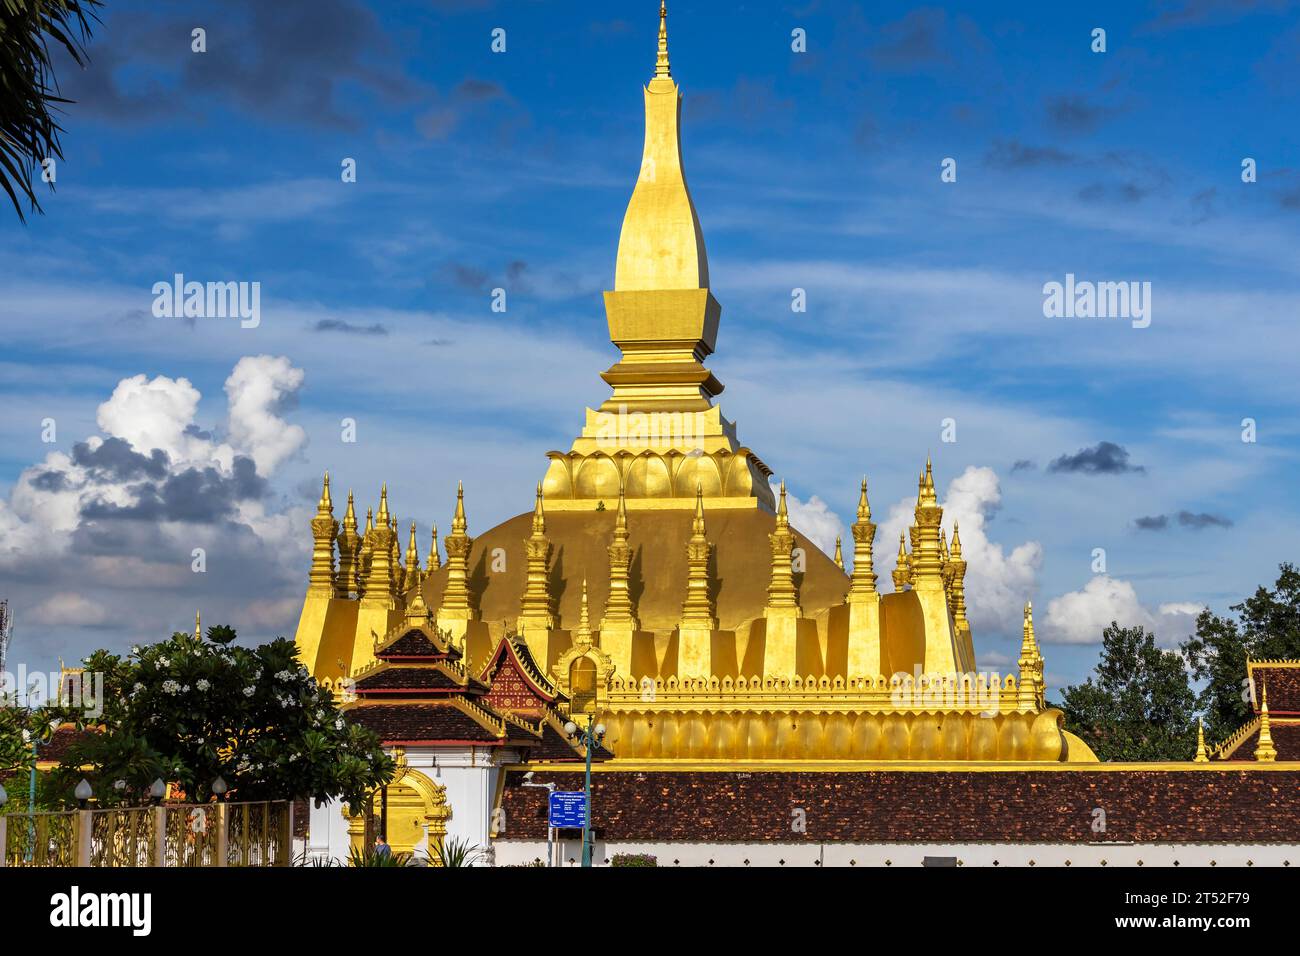 PHA That Luang, That Luang, stupa bouddhiste symbolique nationale et temple, Vientiane, Laos, Asie du Sud-est, Asie Banque D'Images